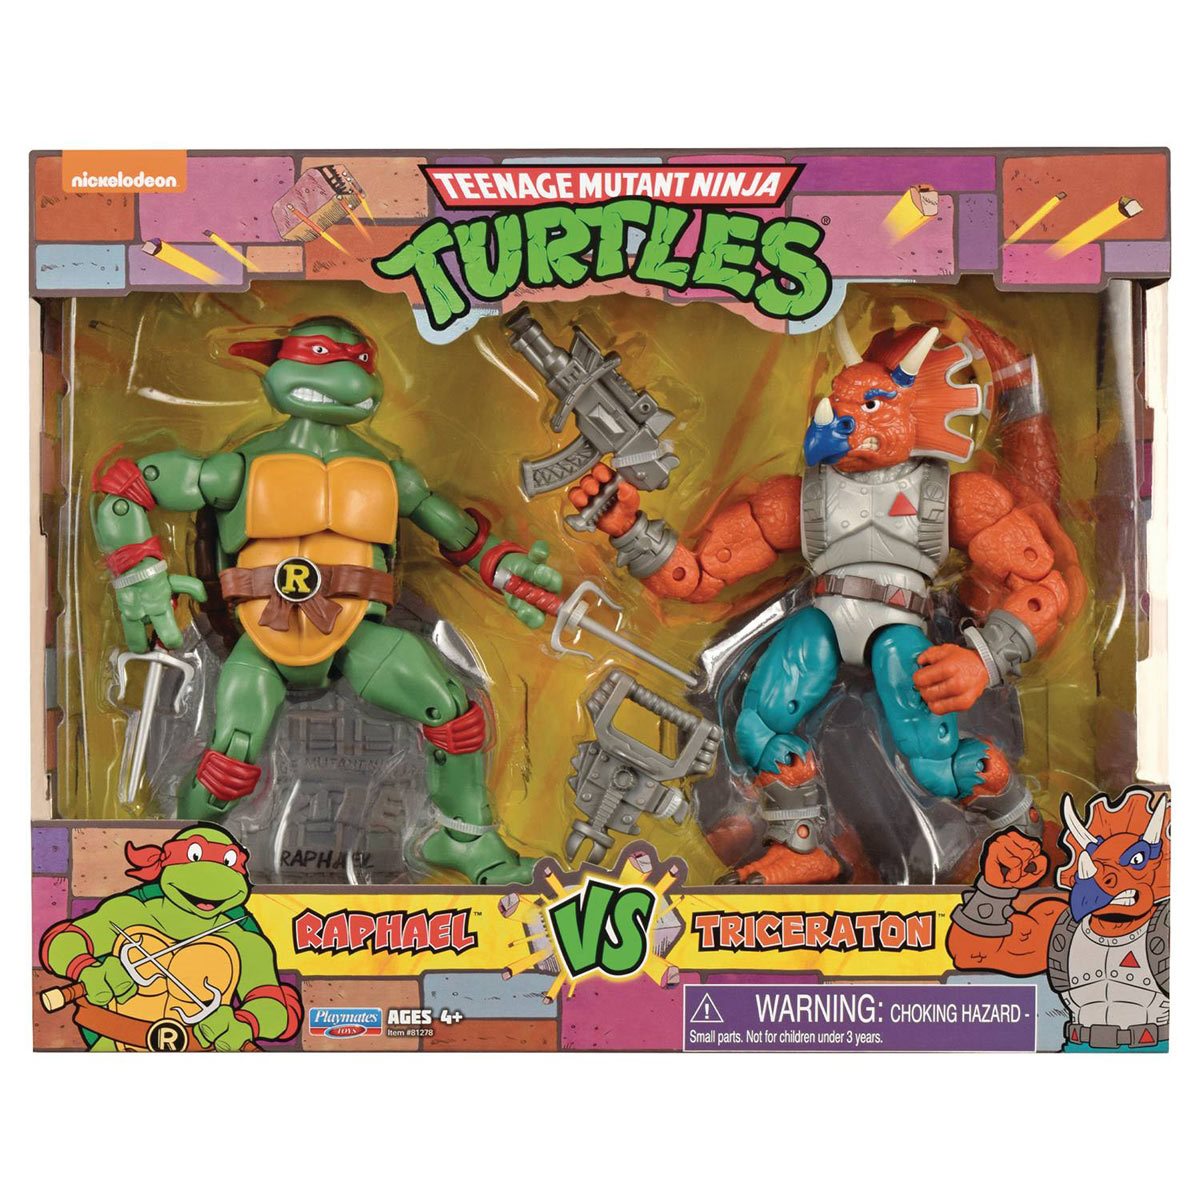  Teenage Mutant Ninja Turtles: Mutant Mayhem Making of a Ninja  Raphael Action Figure 3-Pack : Toys & Games